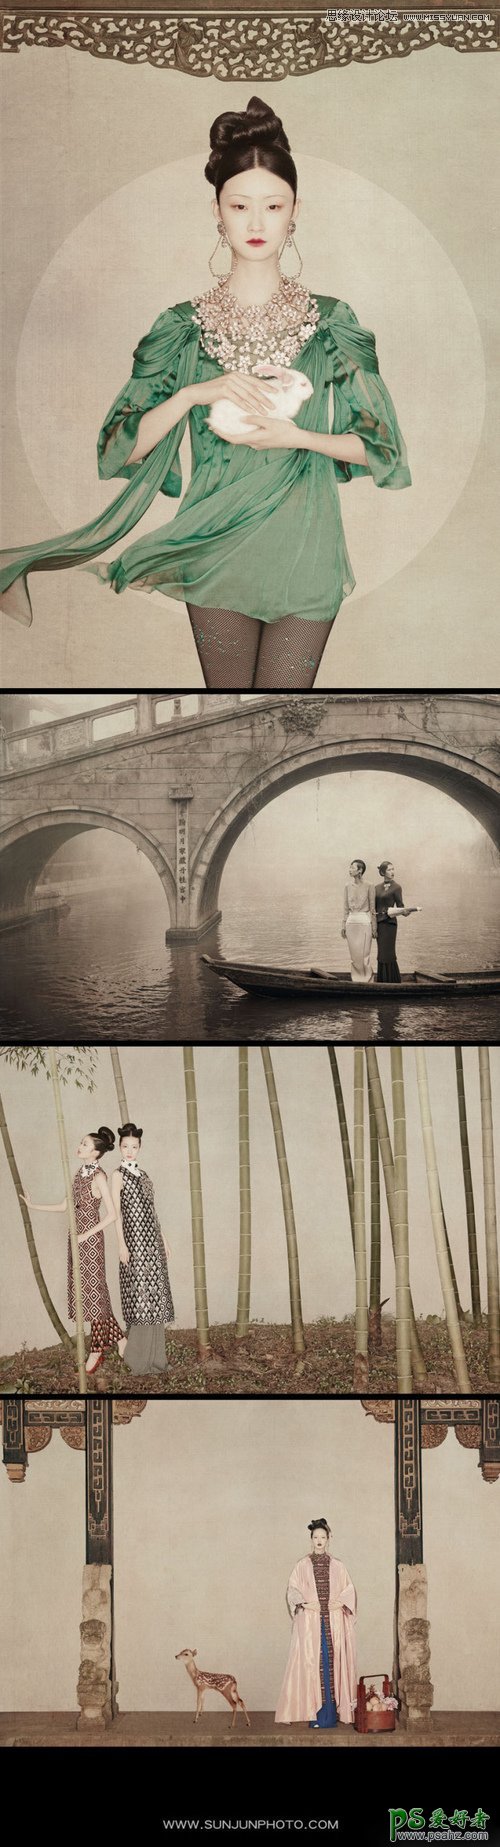 PS人像后期教程：给漂亮的室内美女人物照片制作出中国风唯美效果